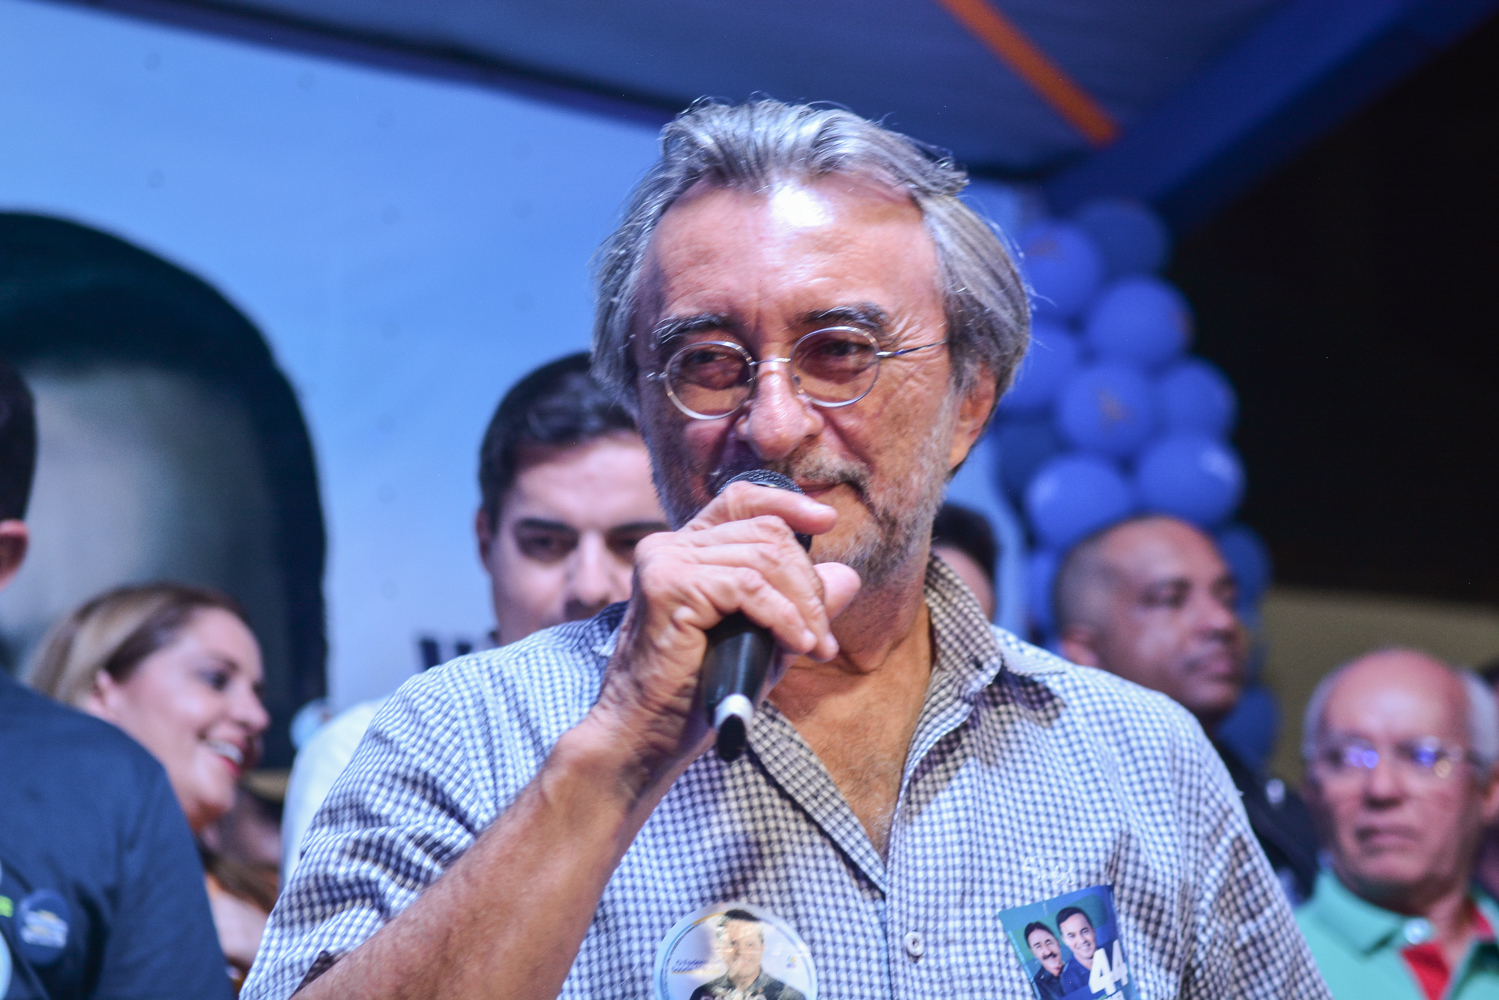 Acilon Gonçalves sobre o processo de cassação da chapa do PL: “Tudo foi feito dentro da lei”